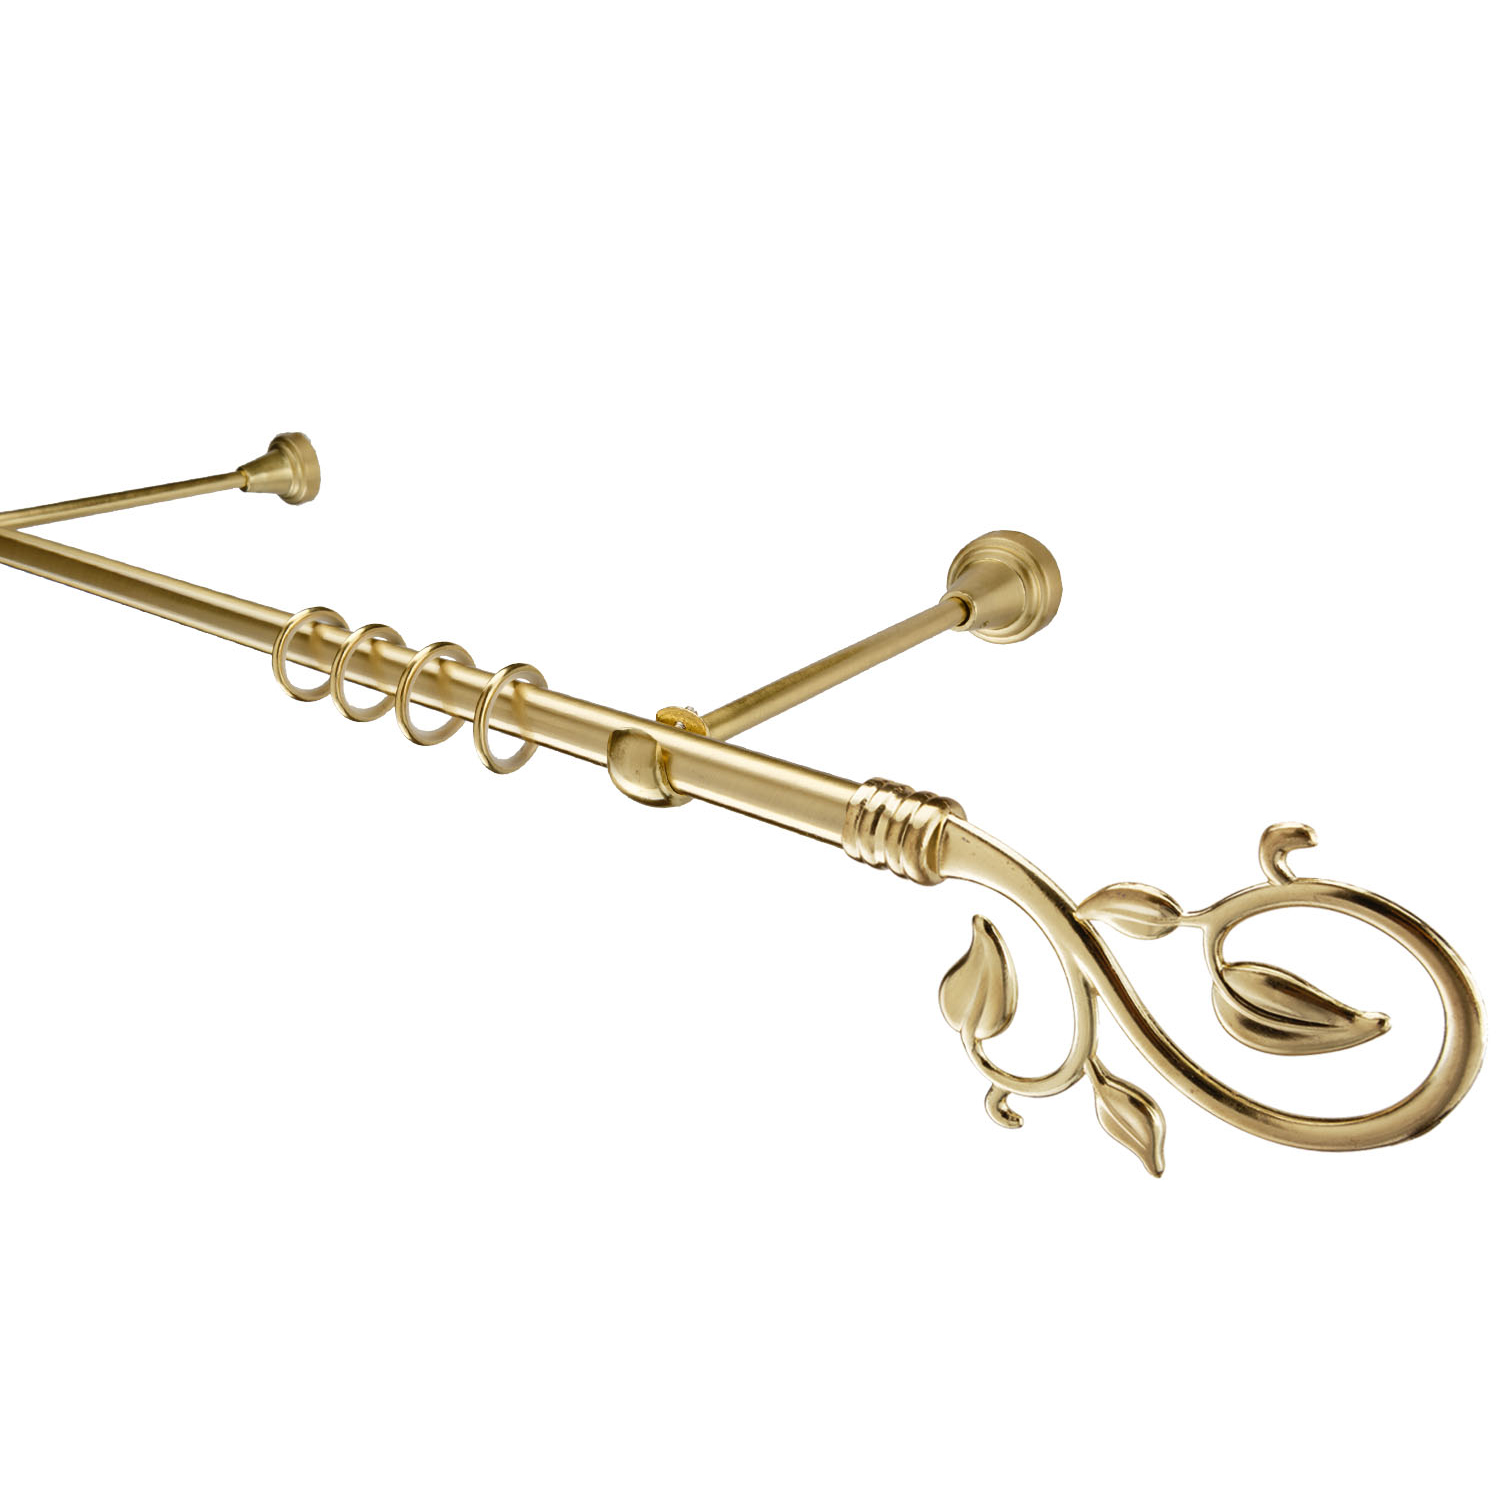 Металлический карниз для штор Амели, однорядный 16 мм, золото, гладкая штанга, длина 180 см - фото Wikidecor.ru